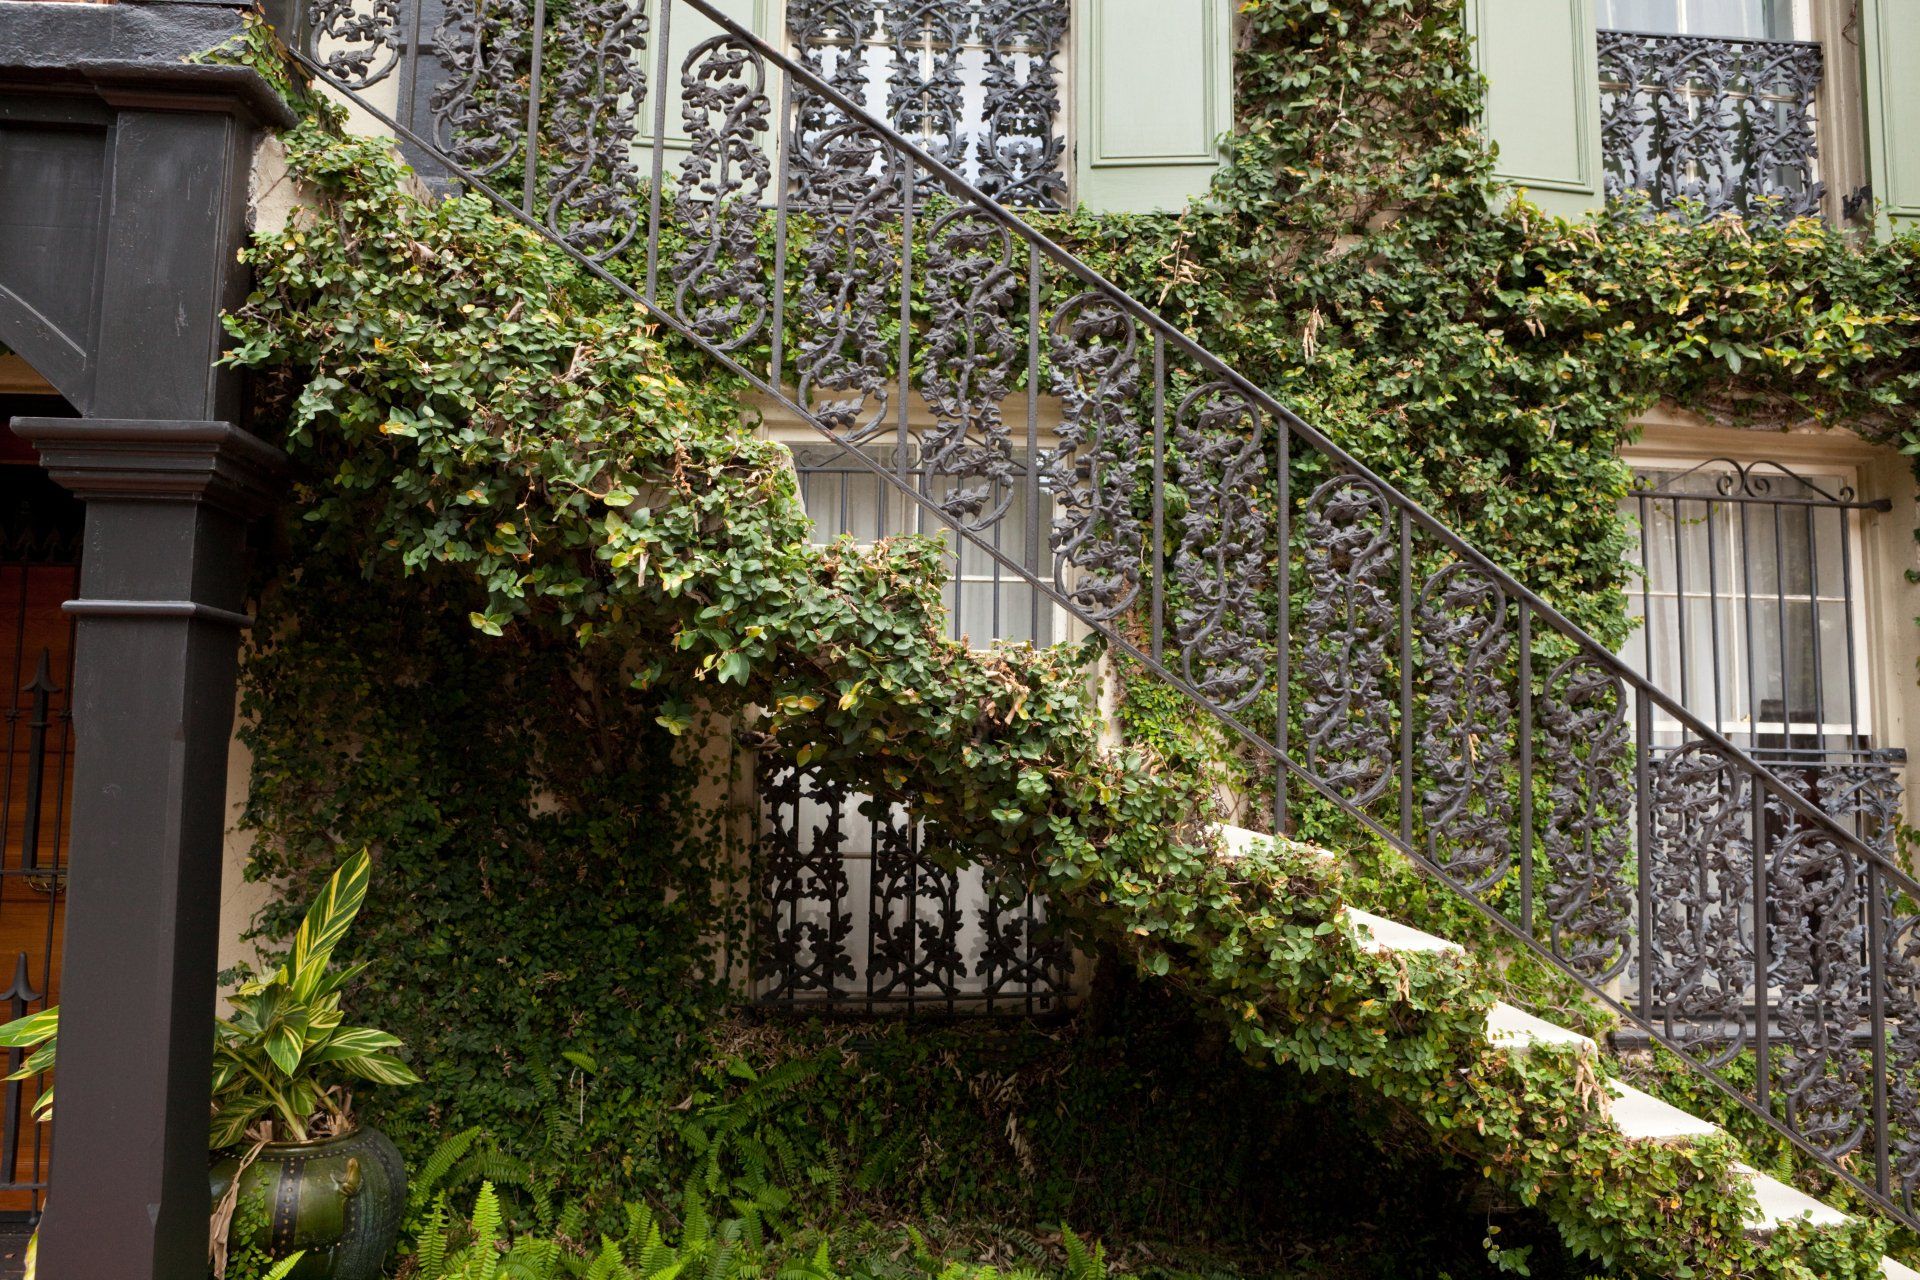 Ornamental metal stair railings outdoors with vines growing